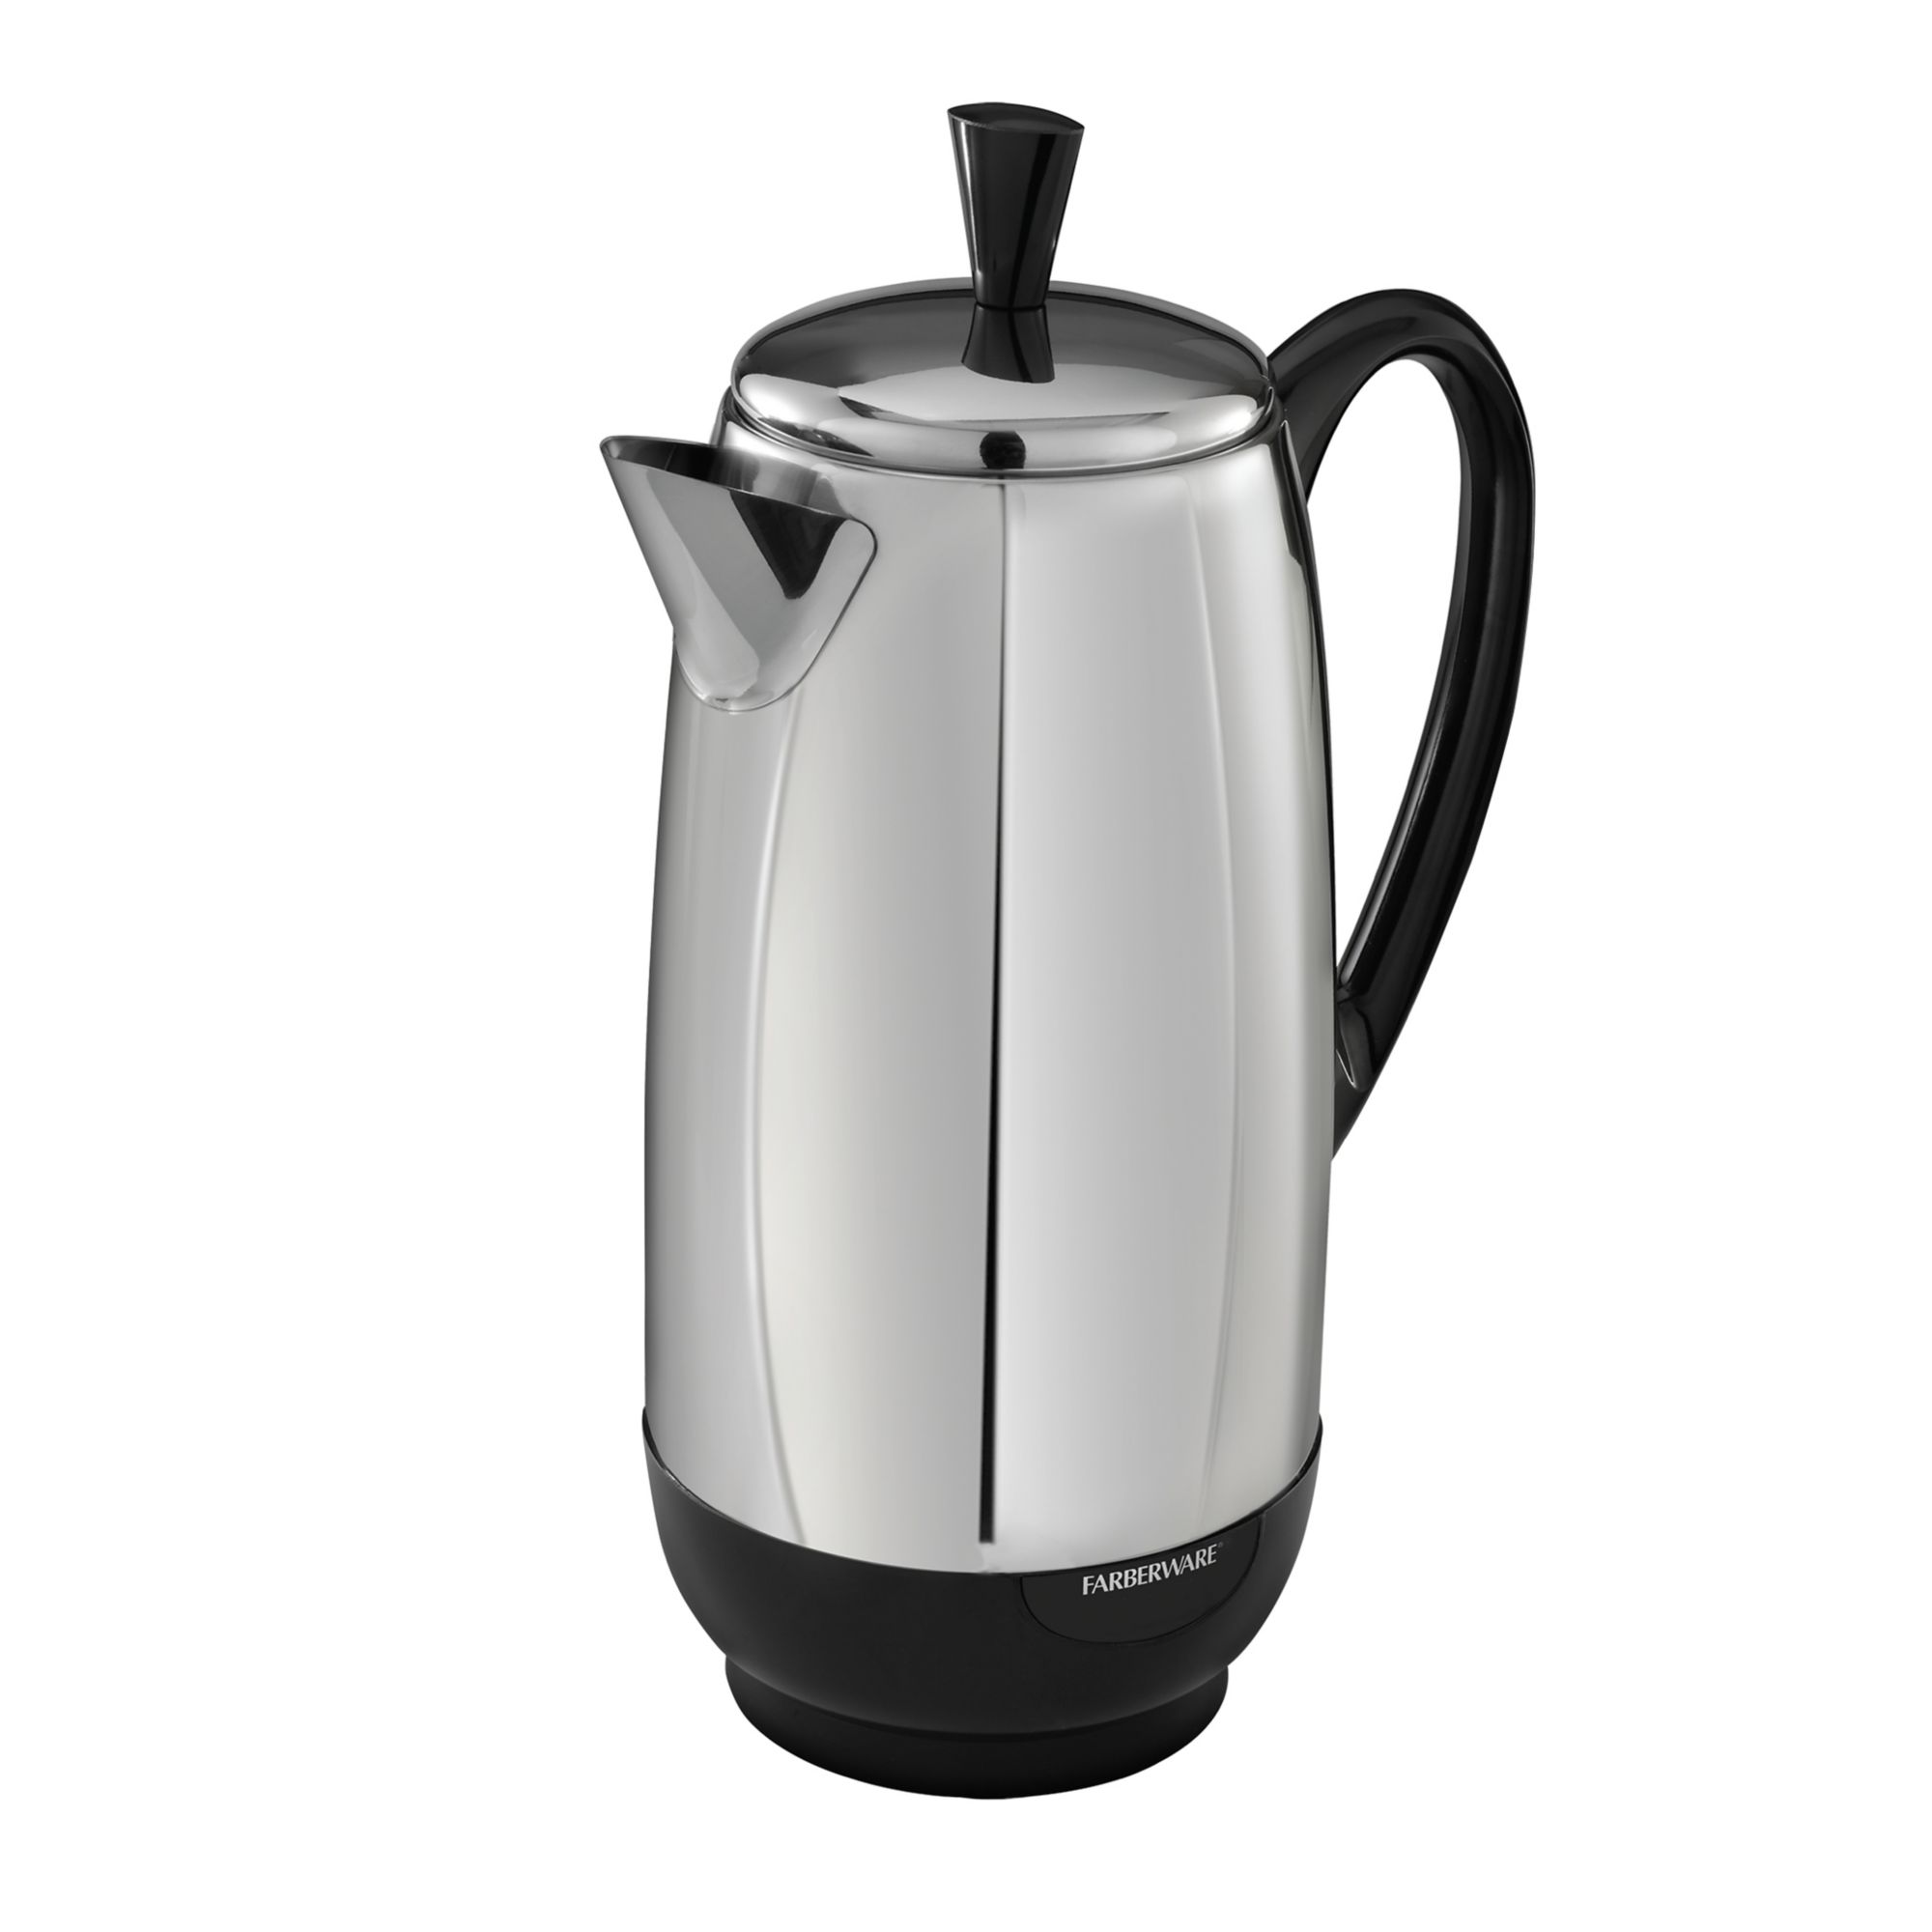 Farberware Ferberware 12-Cup Coffee Maker & Reviews